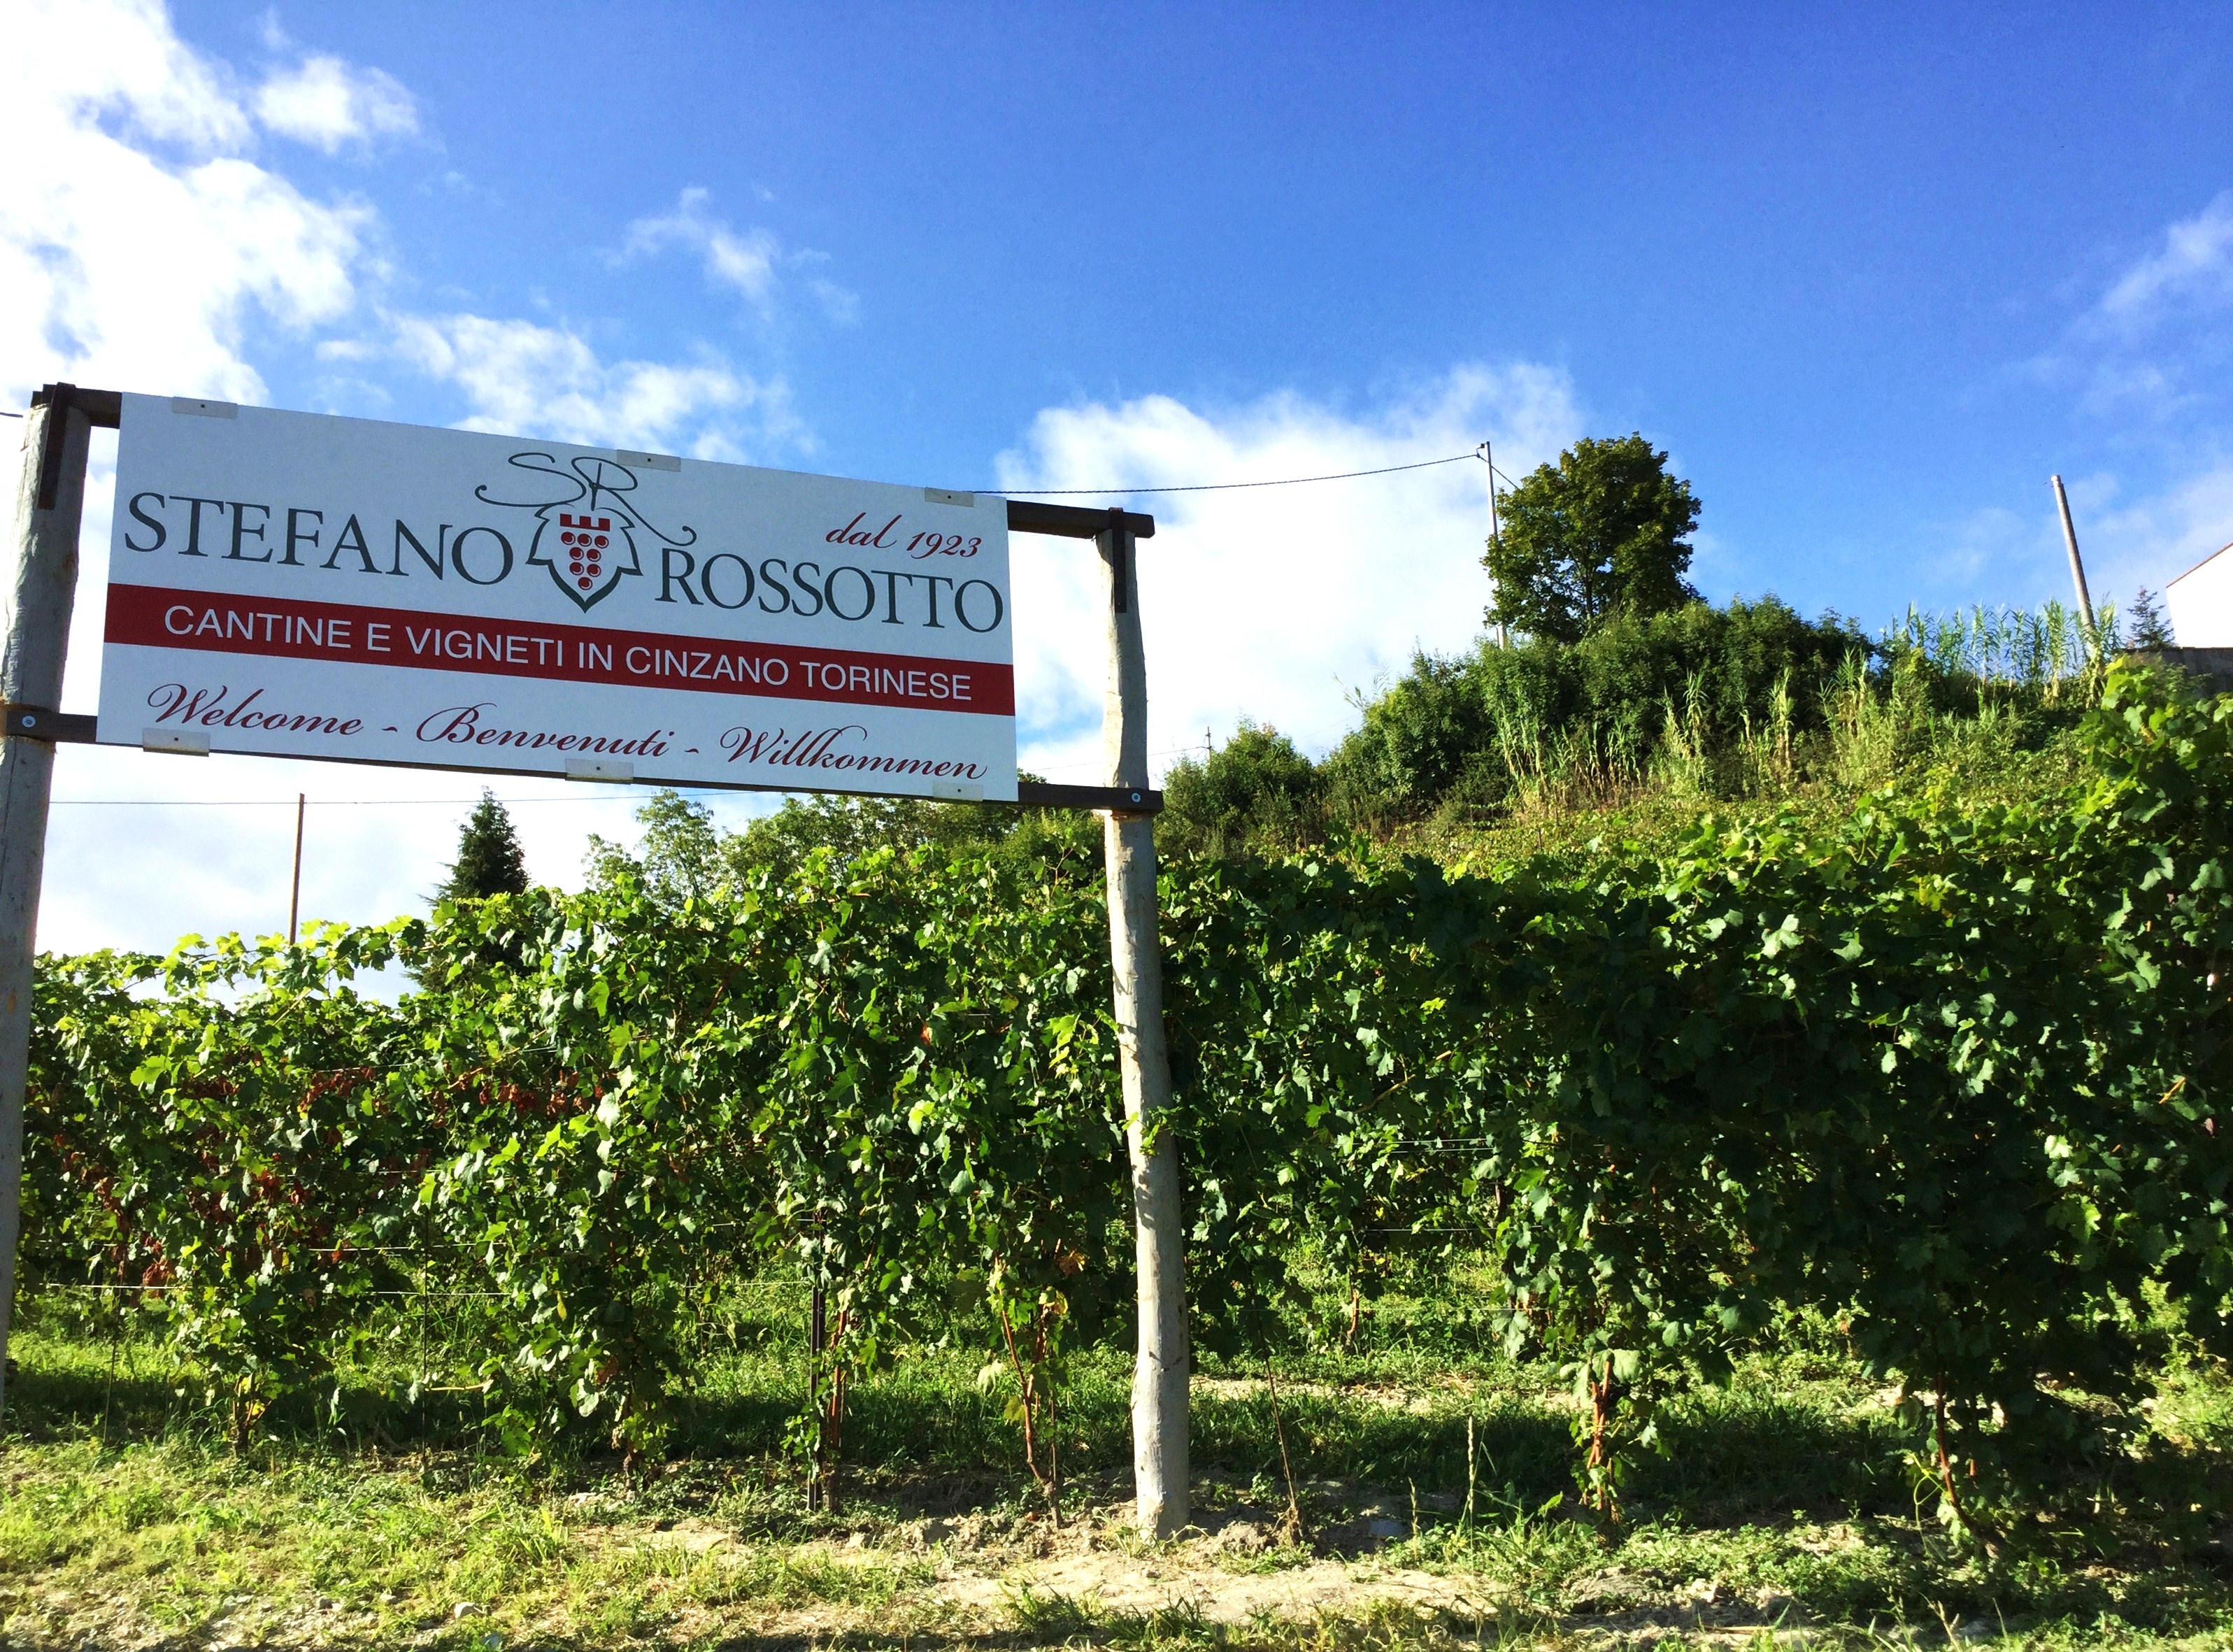 MAESTRI DEL GUSTO ed eccellenze: l’Azienda vitivinicola ROSSOTTO